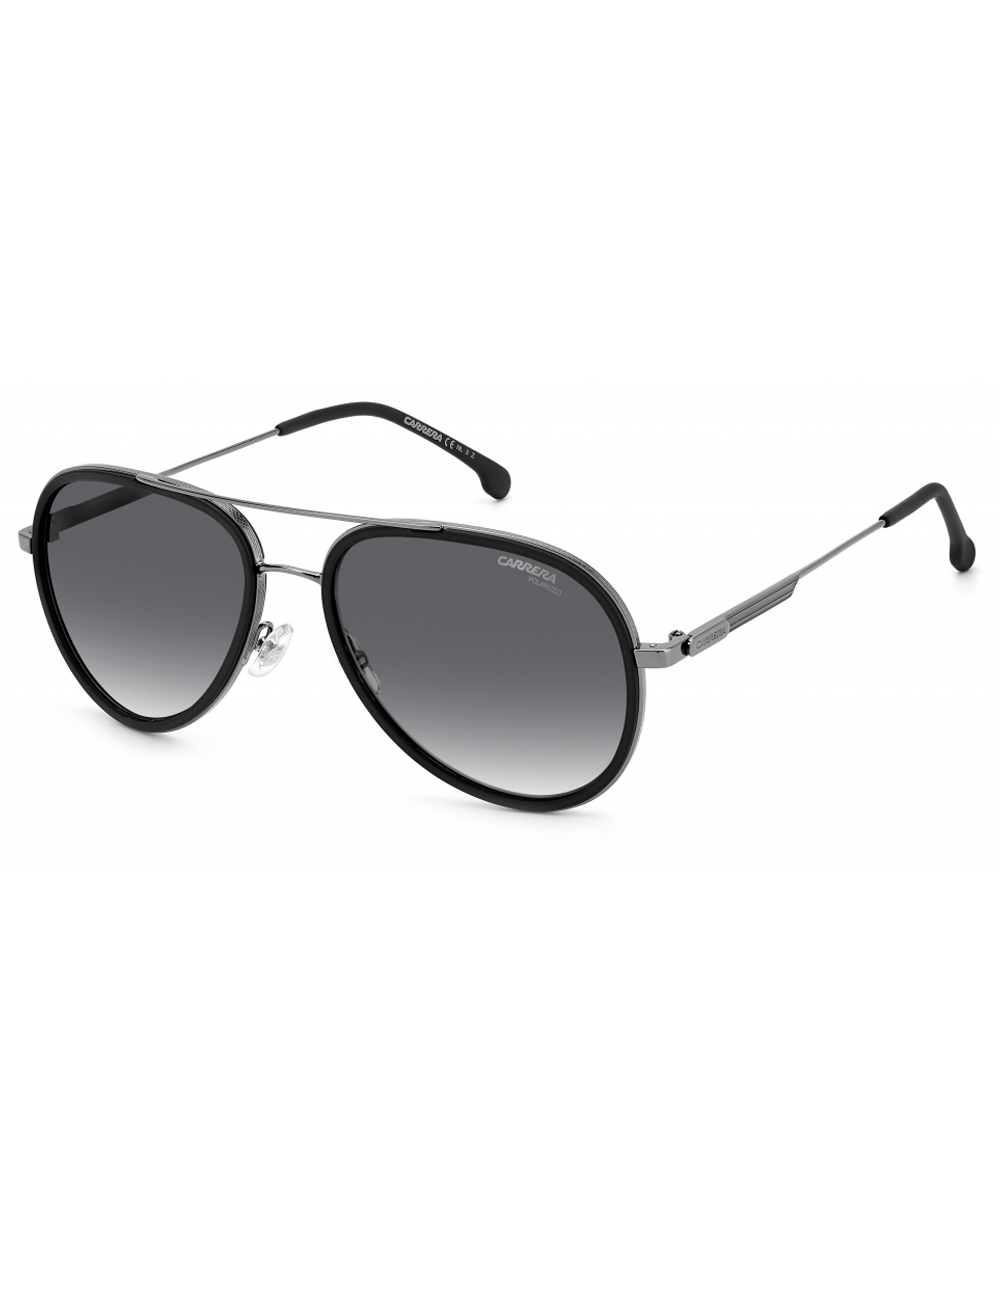 Солнцезащитные очки унисекс Carrera 1044/S серые